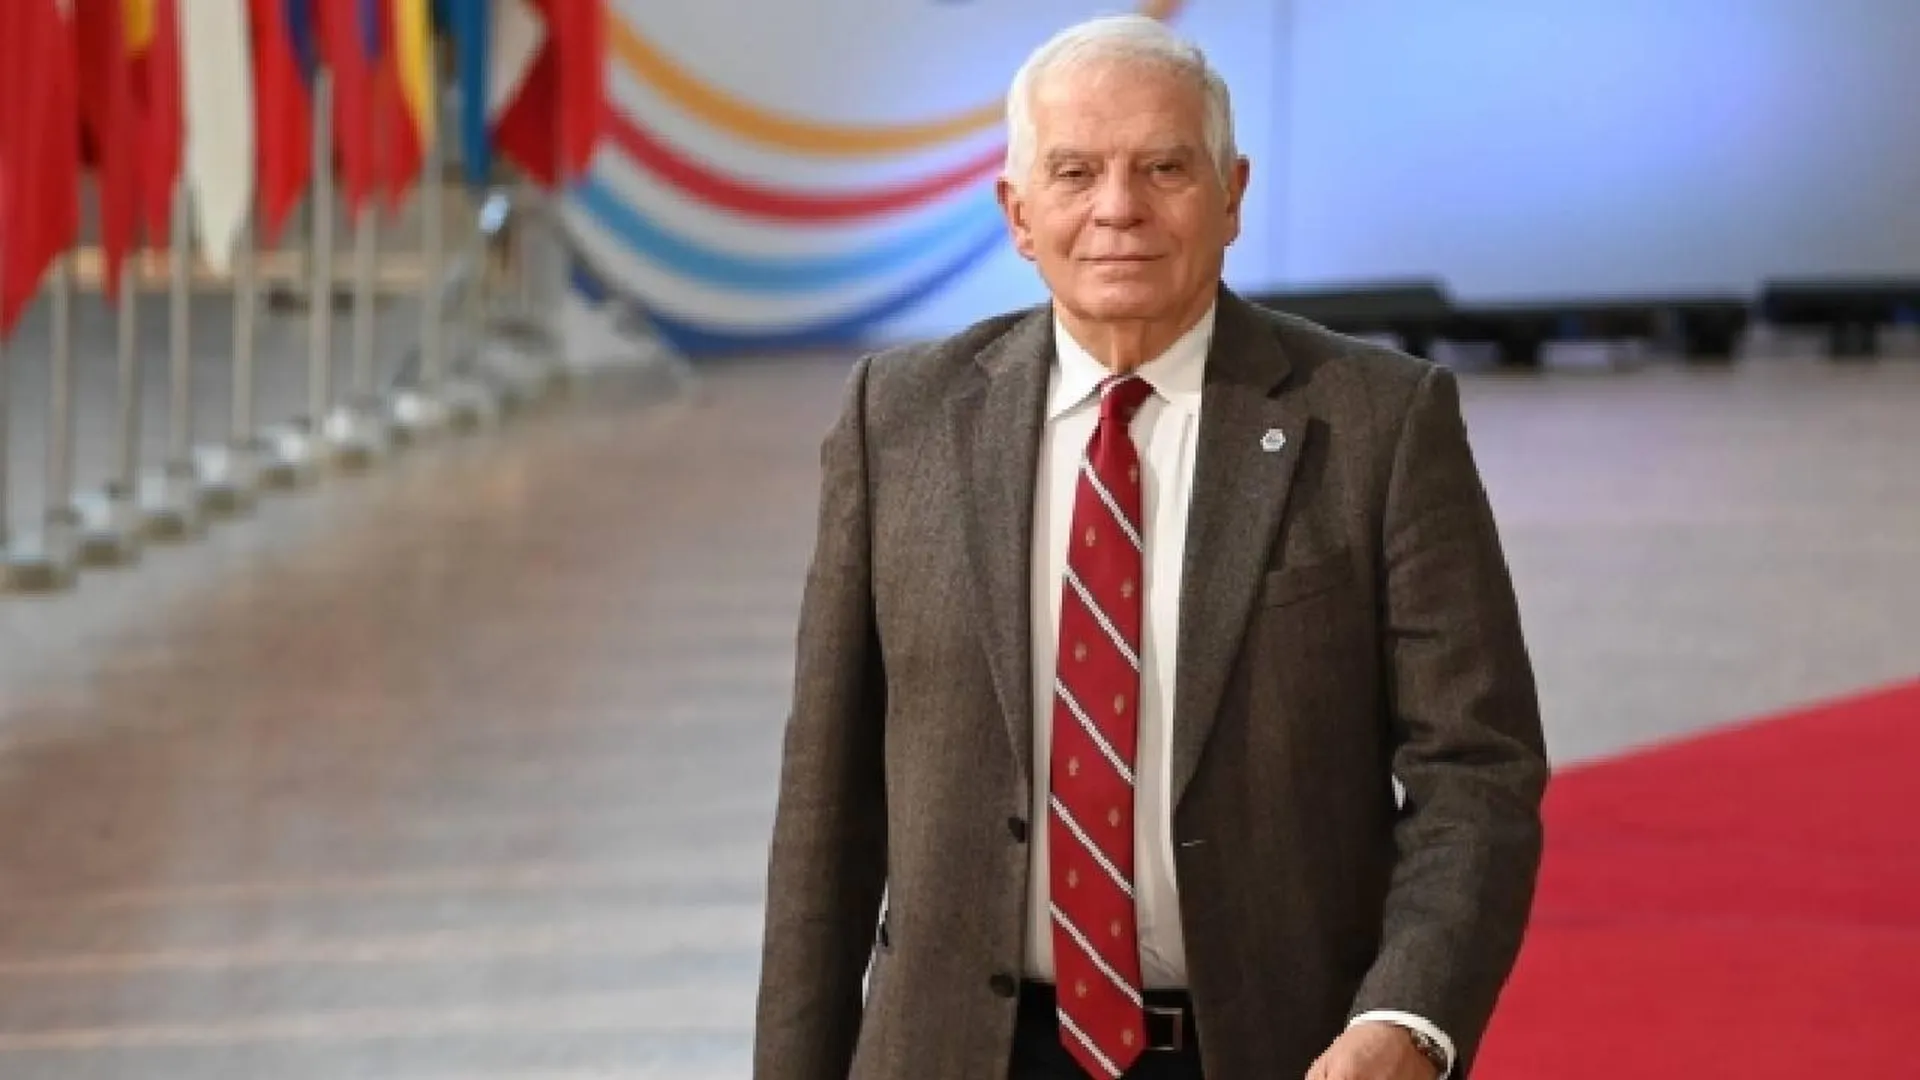 Боррель заявил, что не признает итоги выборов президента РФ в новых регионах